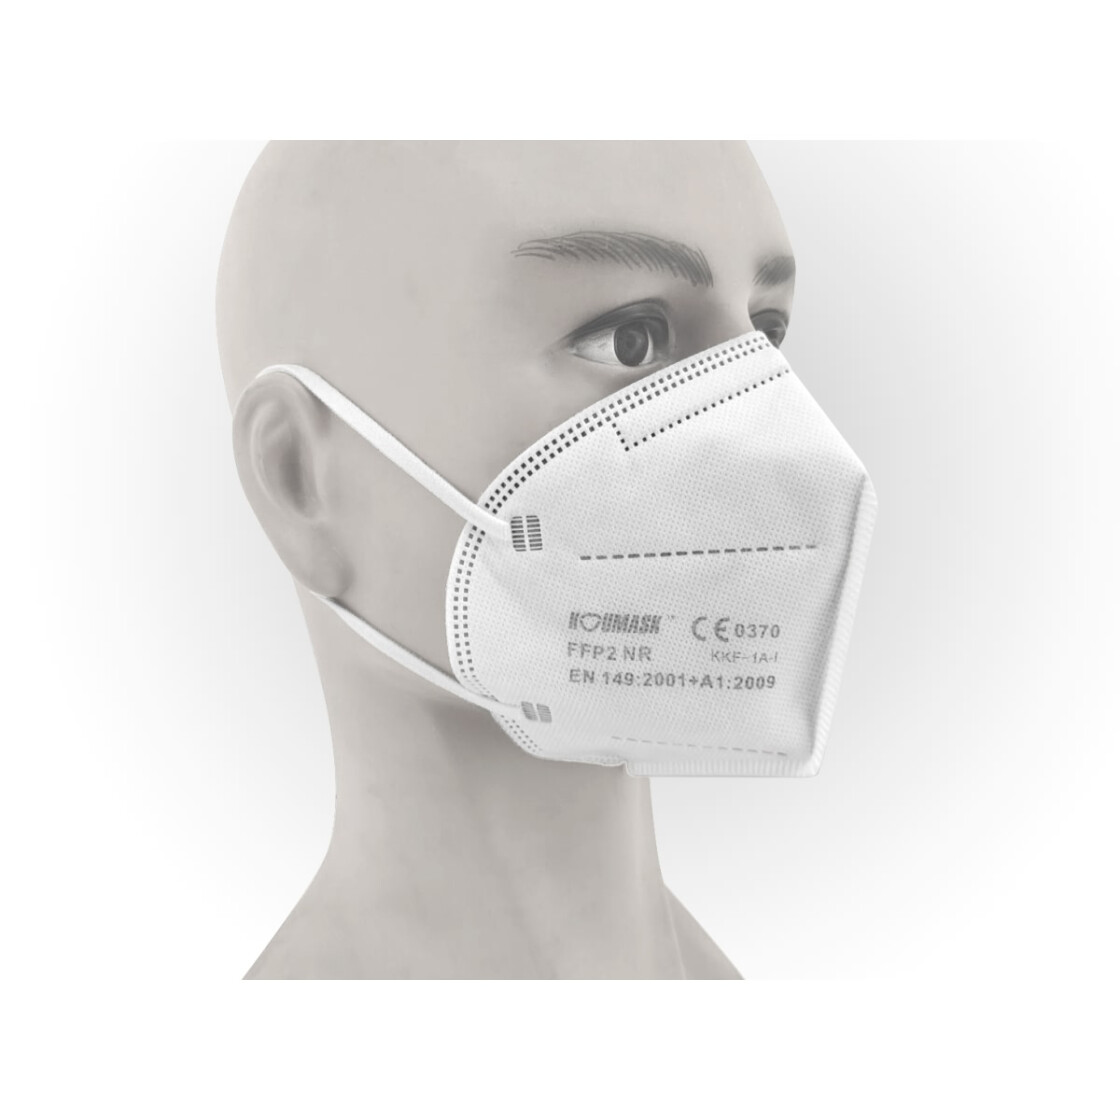 Herzens-Maske - Original Premium-FFP2-Maske für eine Herzens-Organisation  der Wahl